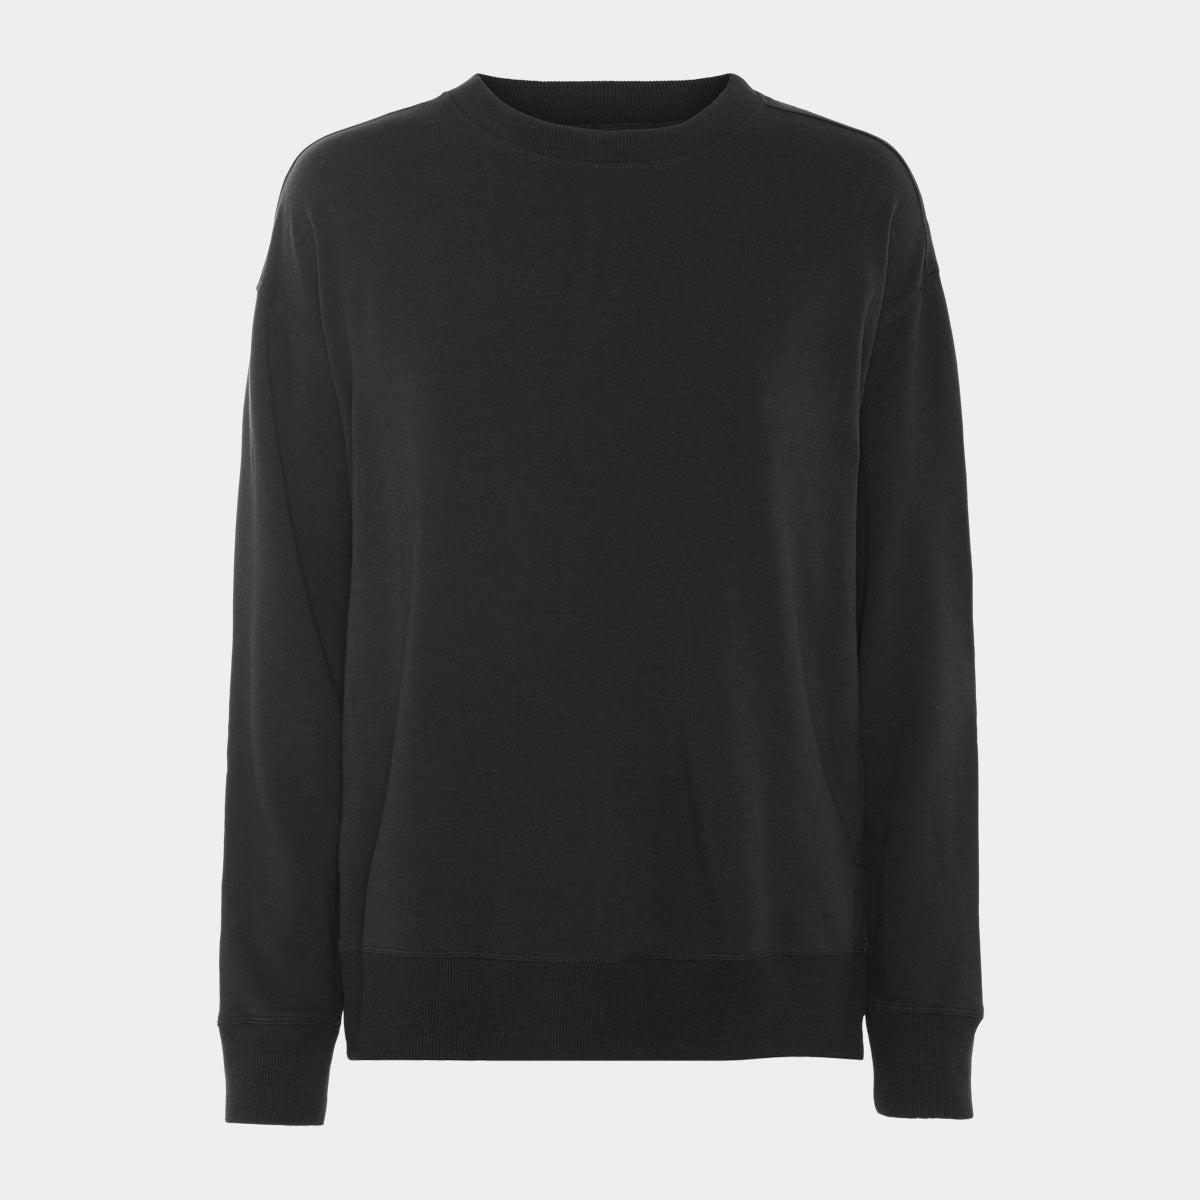 Se Bambus sweatshirt | sorte sweatshirt til damer fra Boody, XS hos Bambustøj.dk